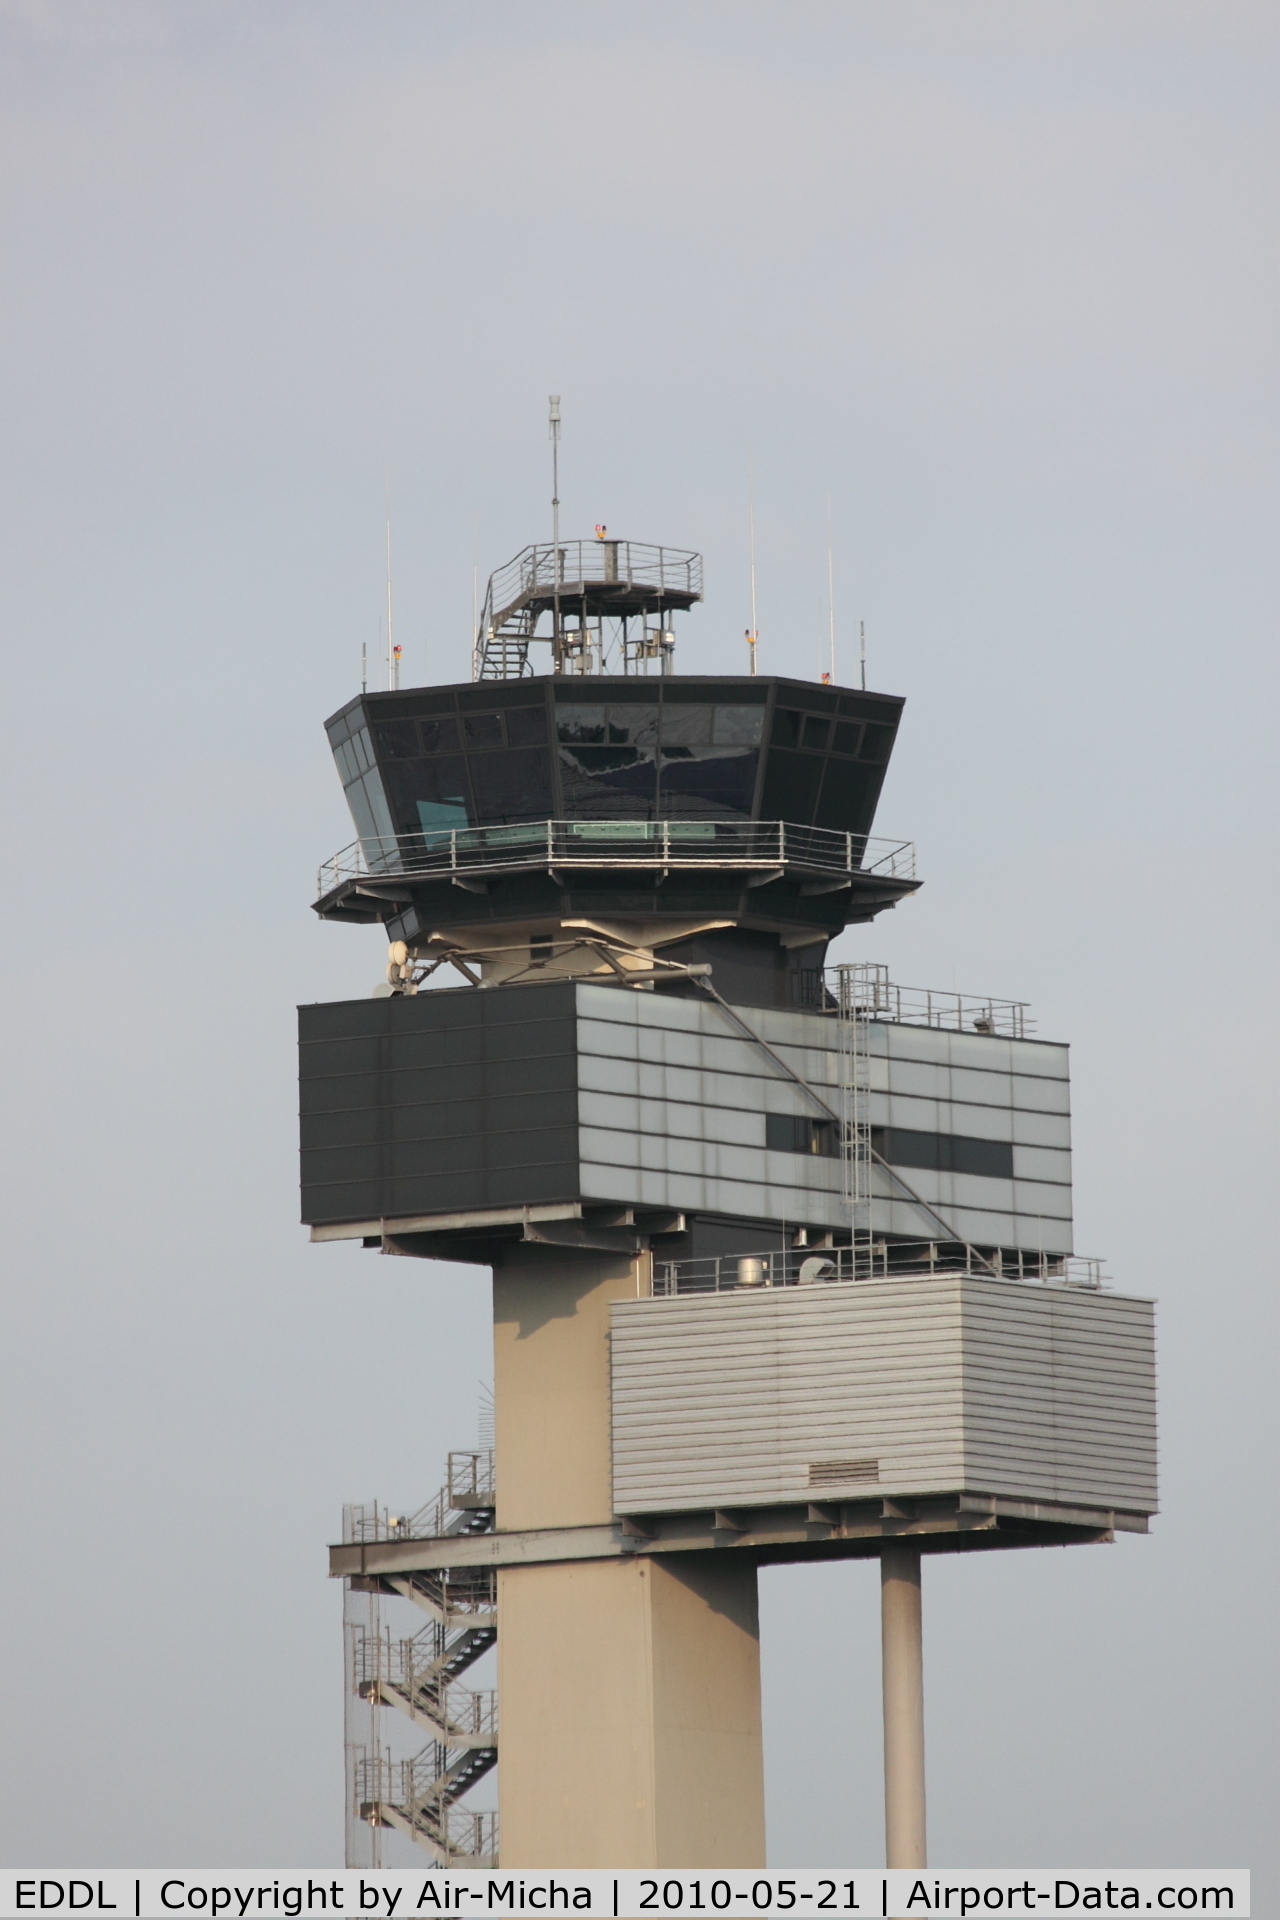 Düsseldorf International Airport, Düsseldorf Germany (EDDL) - Tower of Düsseldorf International Airport